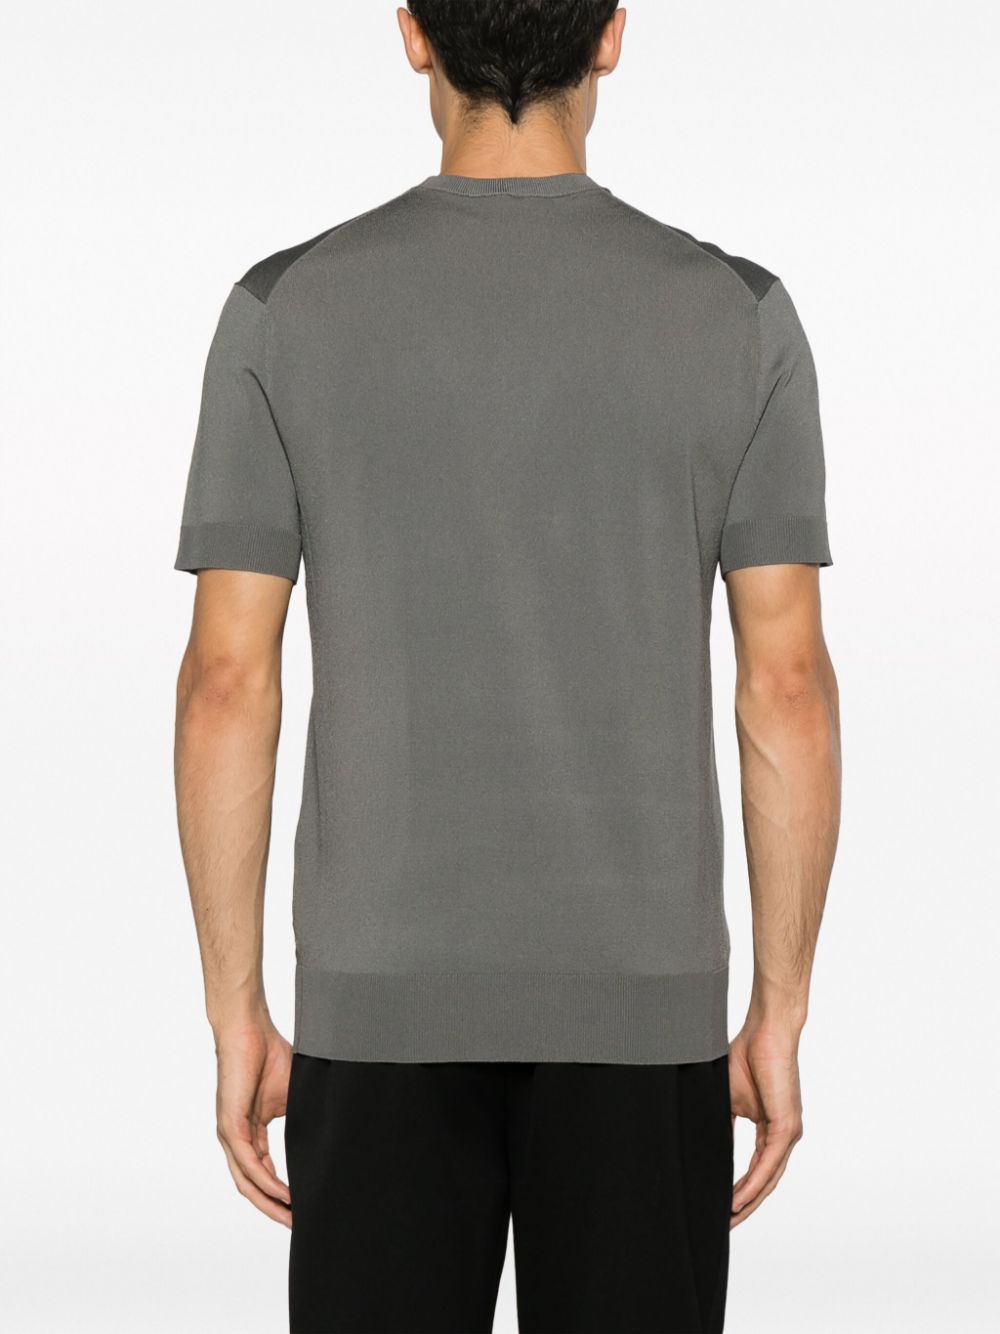 t-shirt in maglia sottile grigia